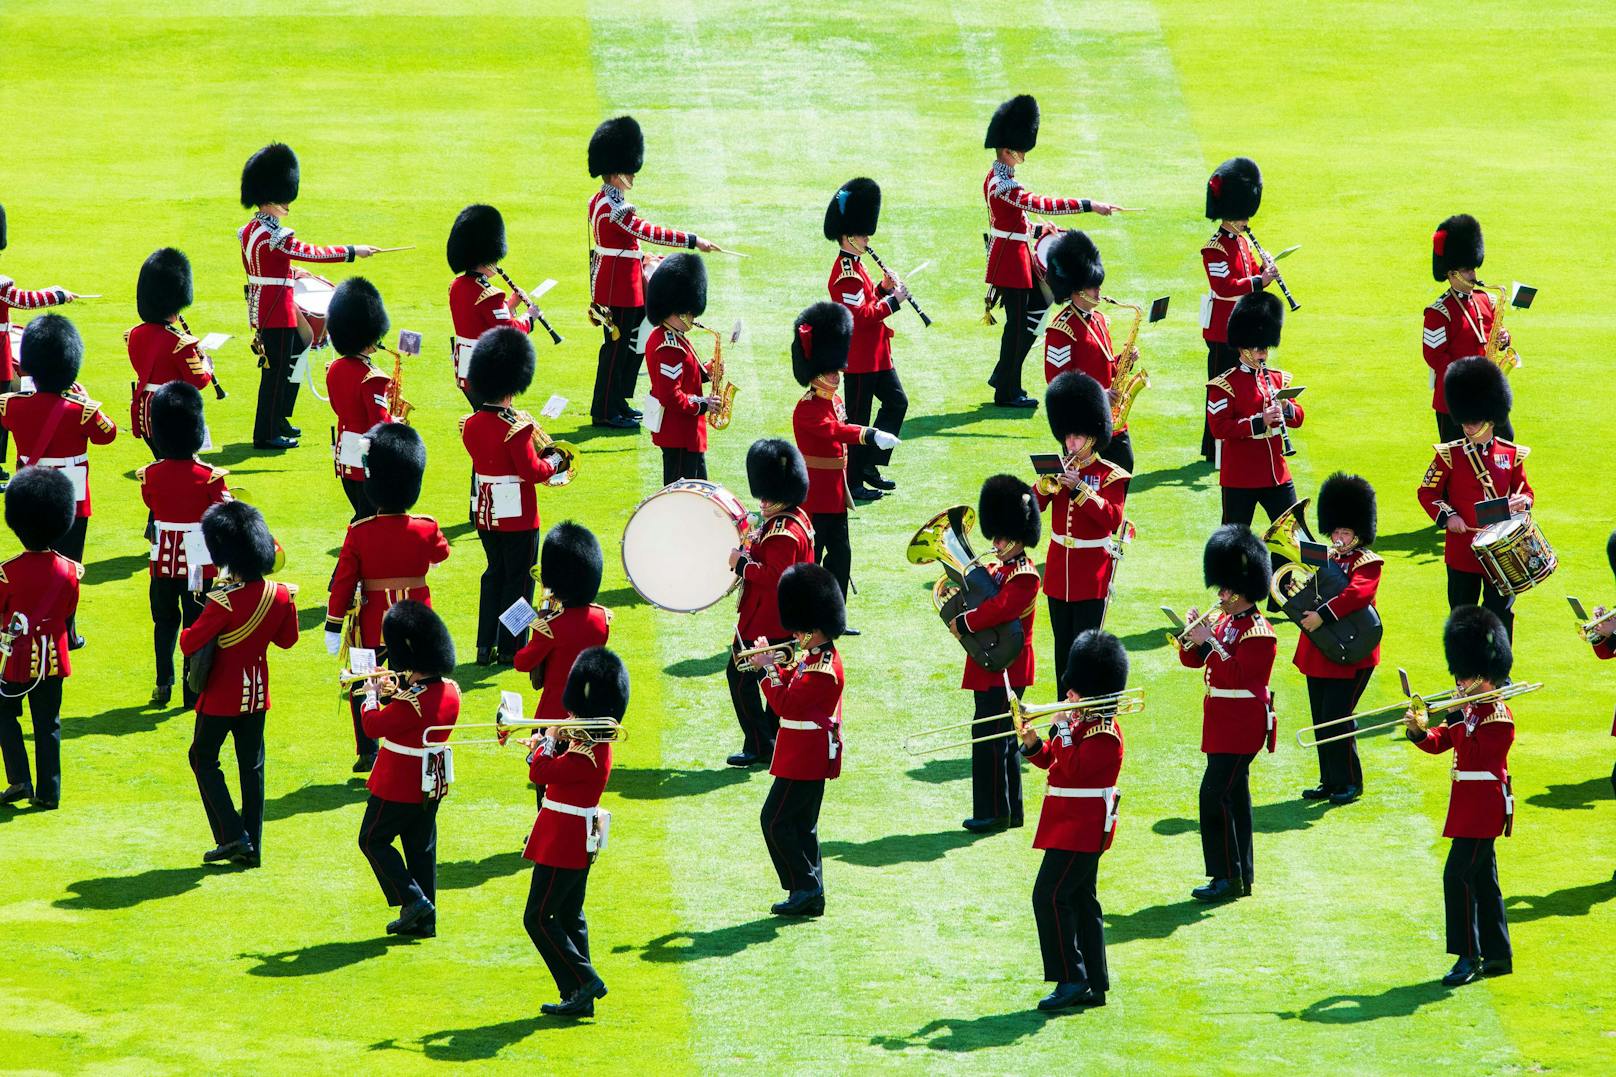 Die Militärkapelle spielte unter anderem die britische Nationalhymne "God save the Queen" und marschierte in Formation.